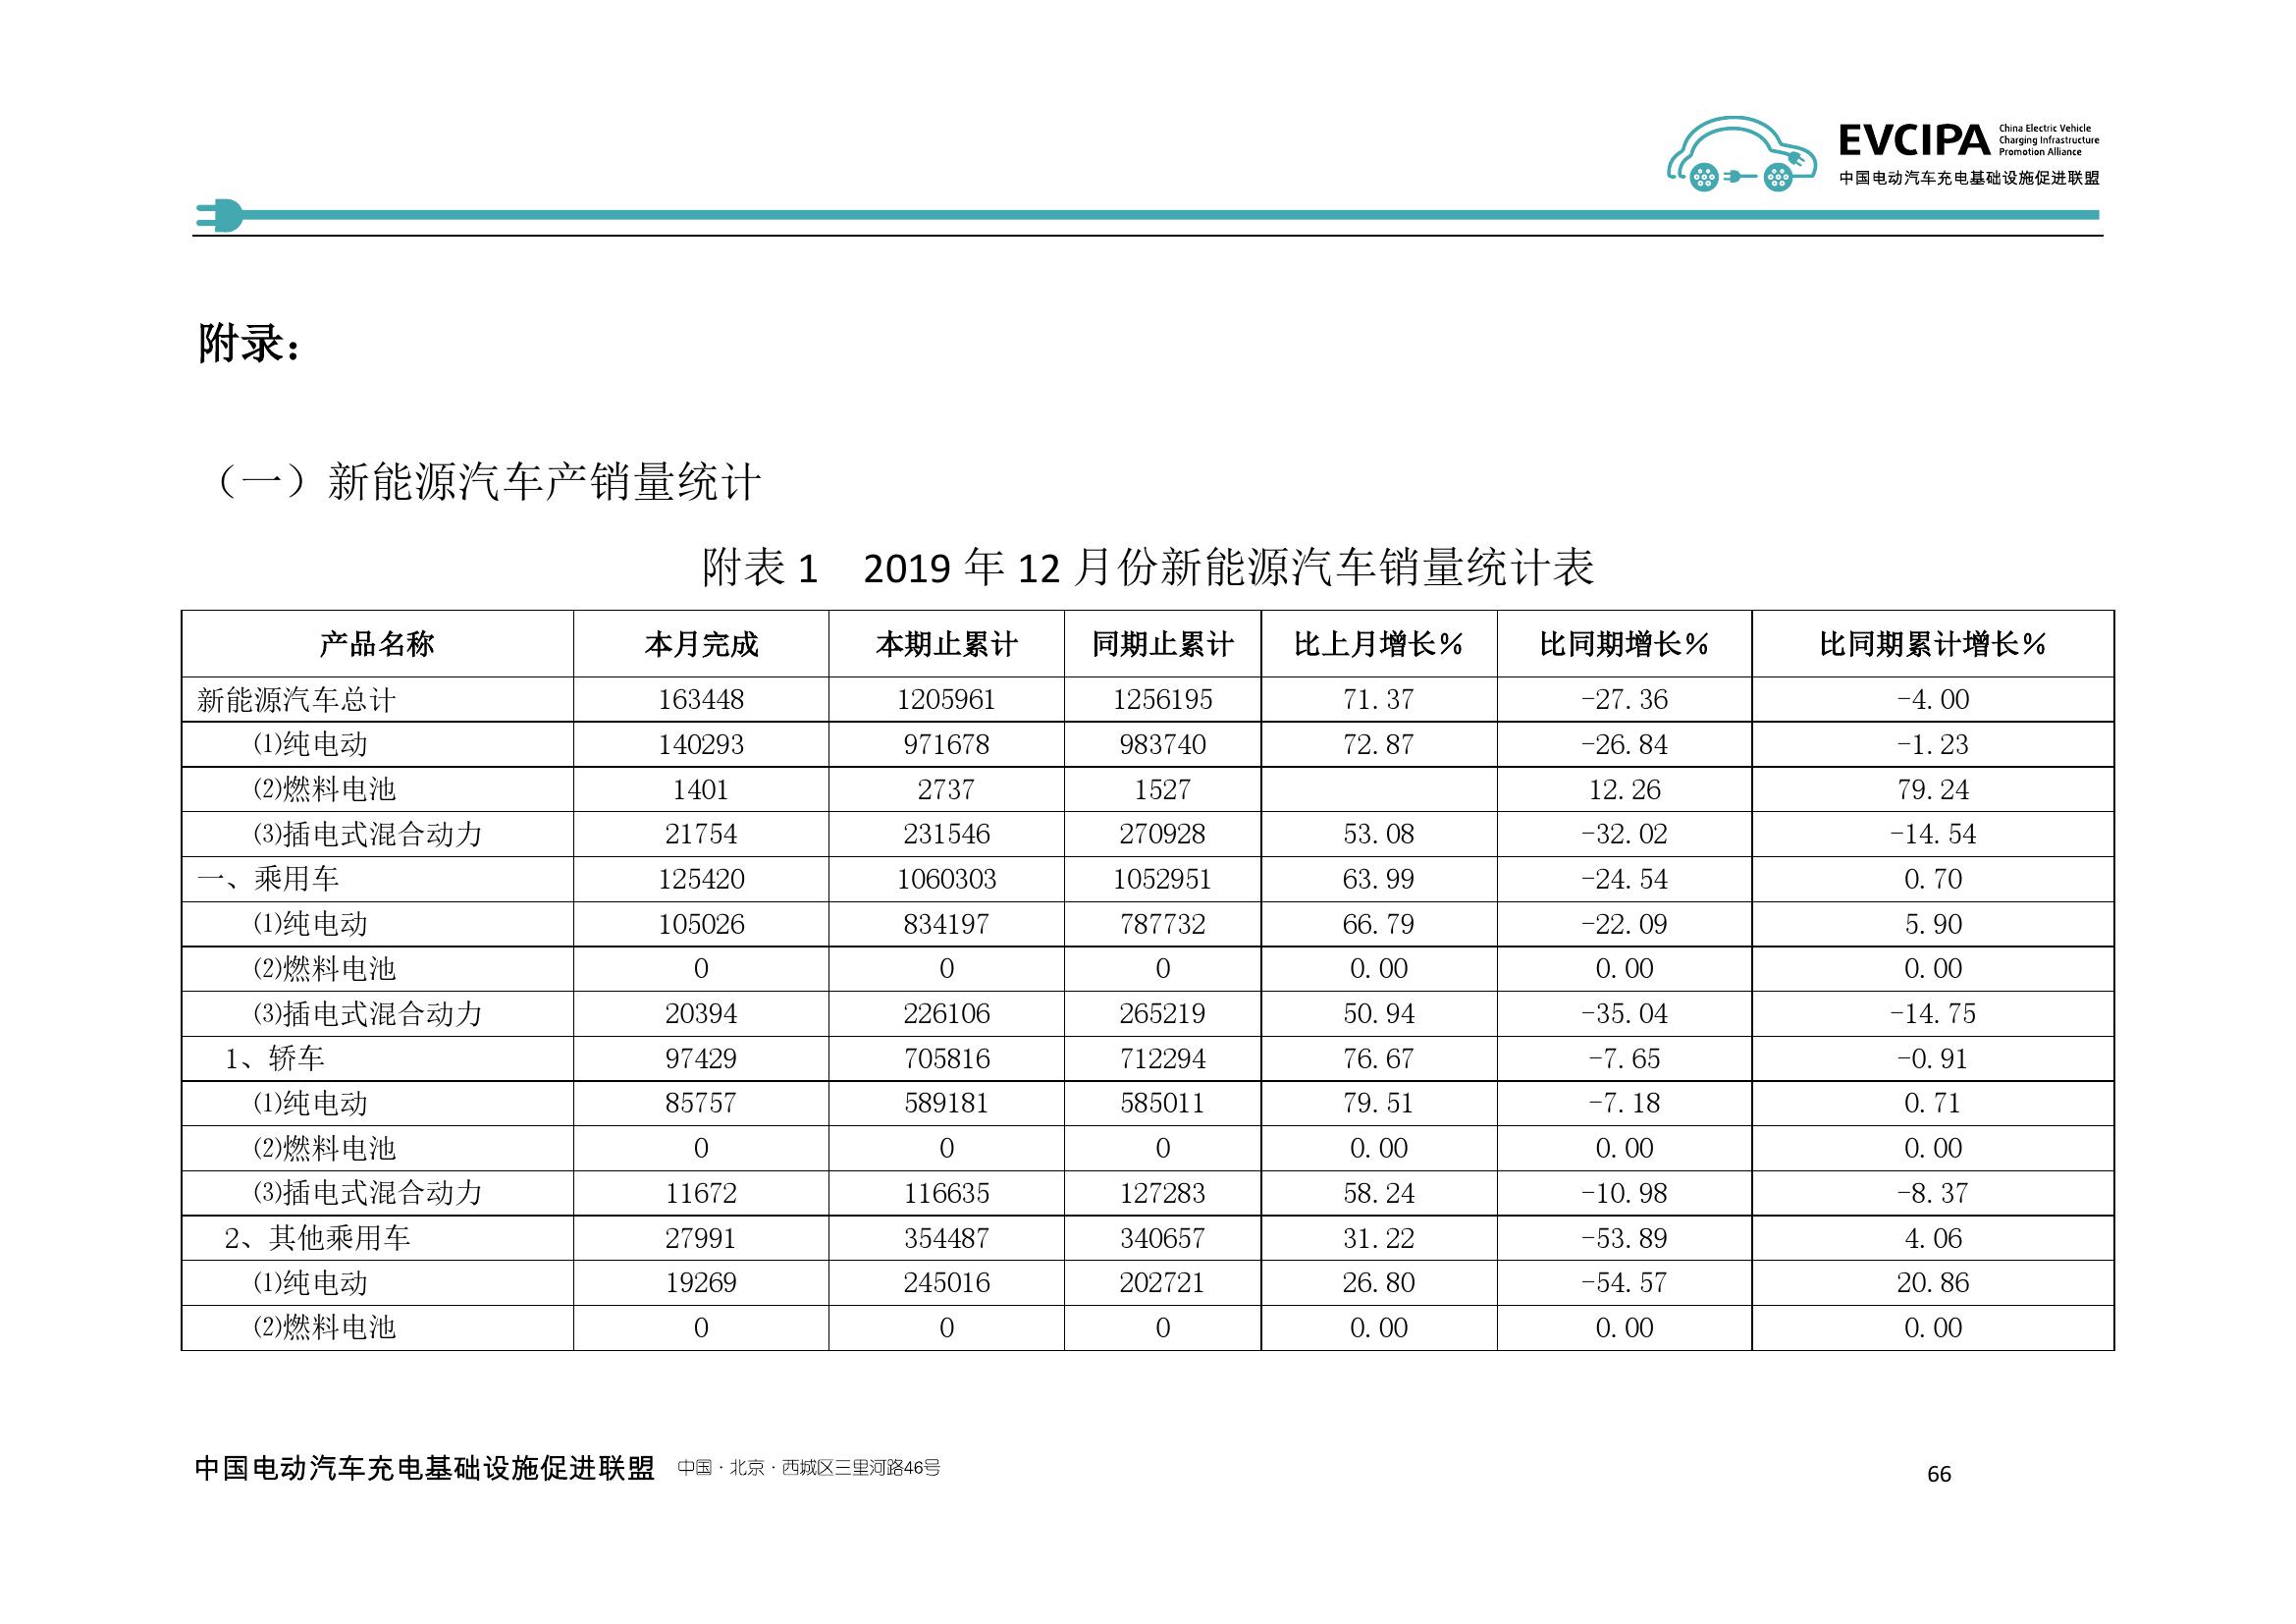 2019-2020年度中国充电基础设施发展报告_000074.jpg